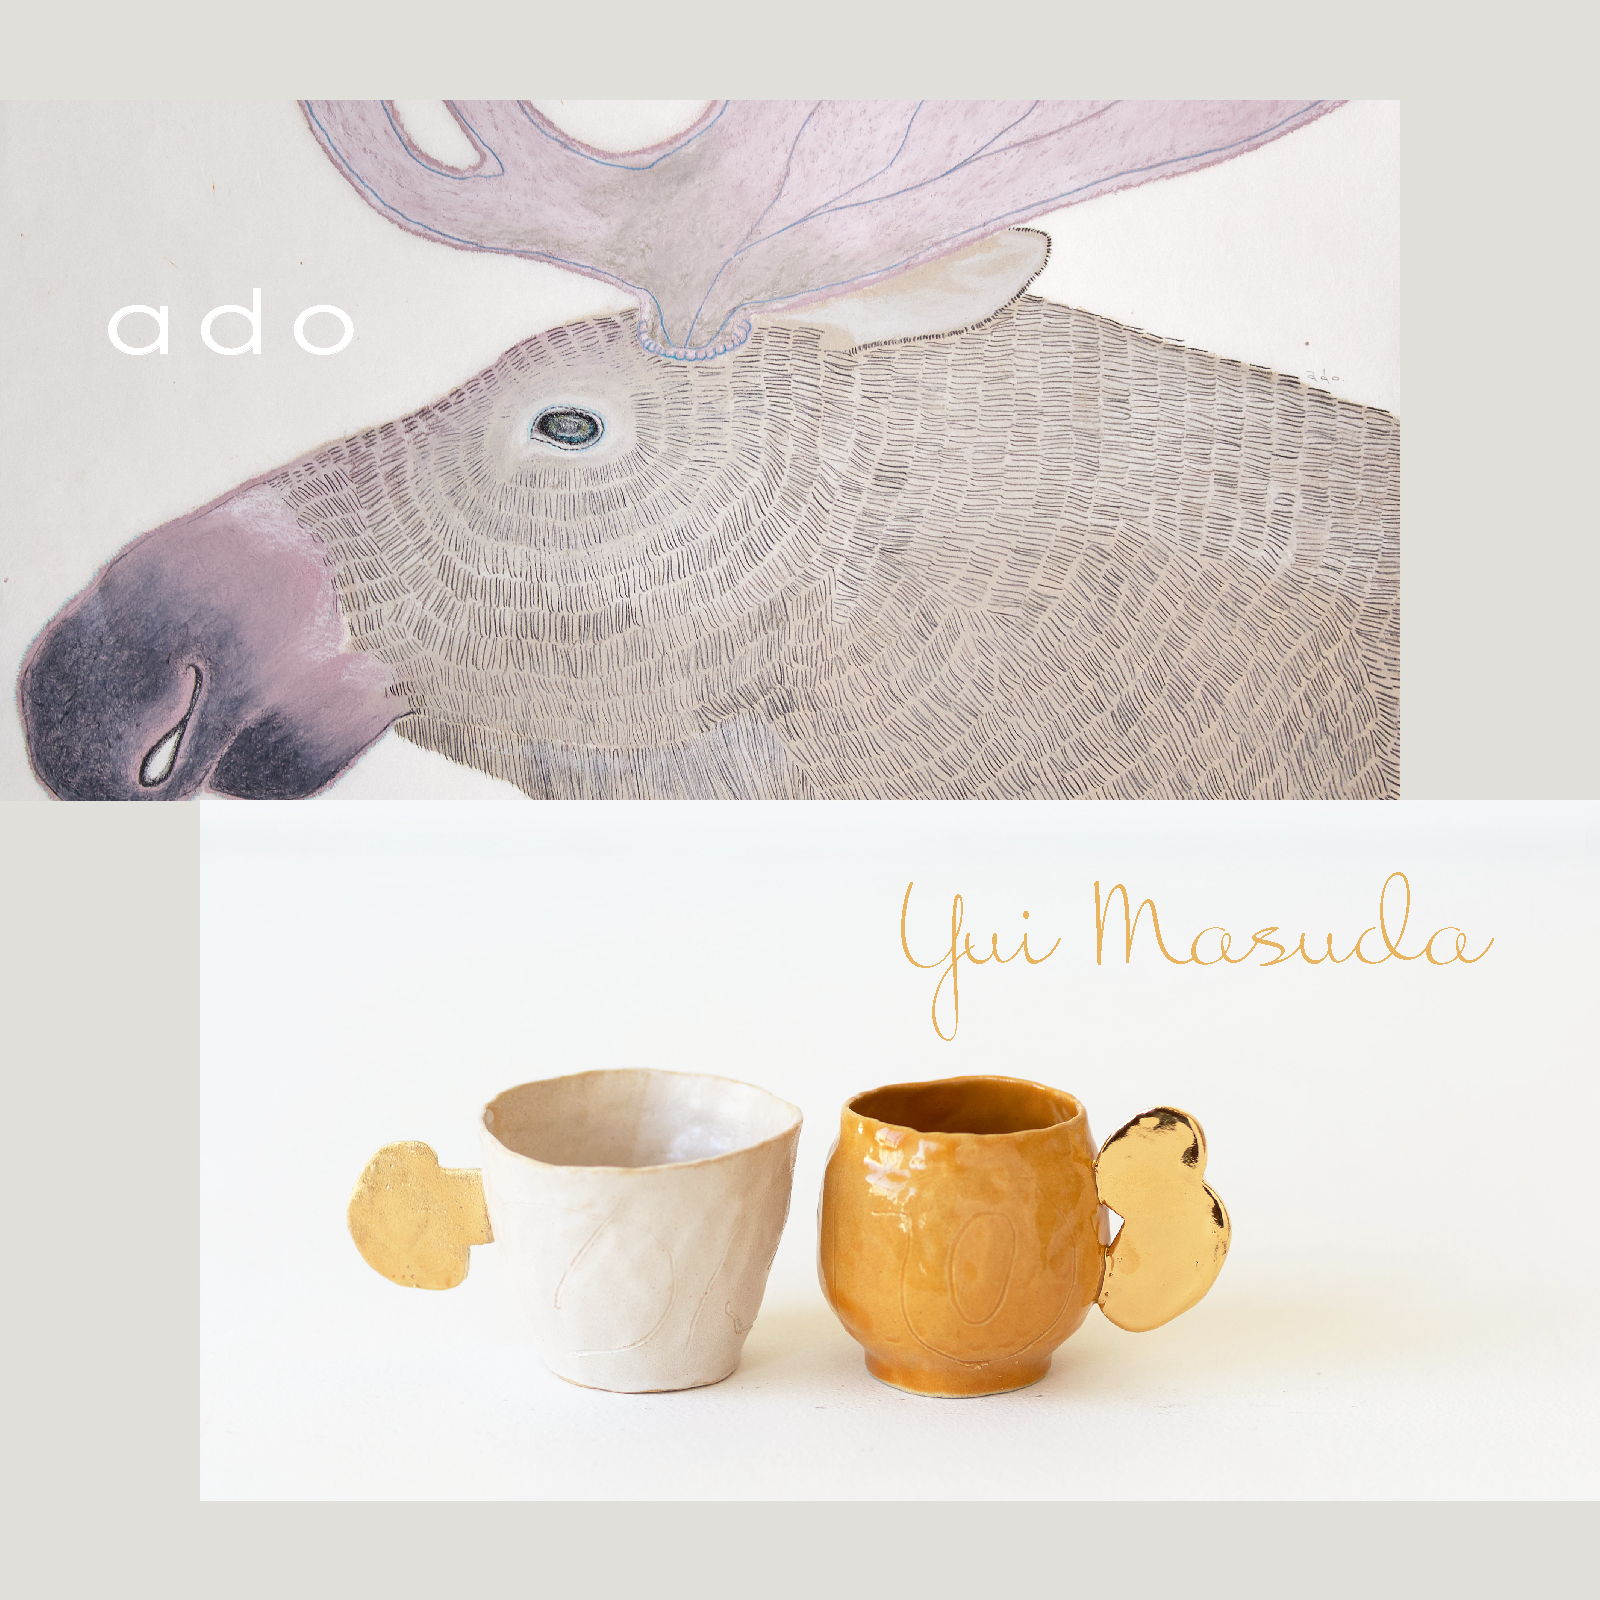 ado & yui masuda exhibition